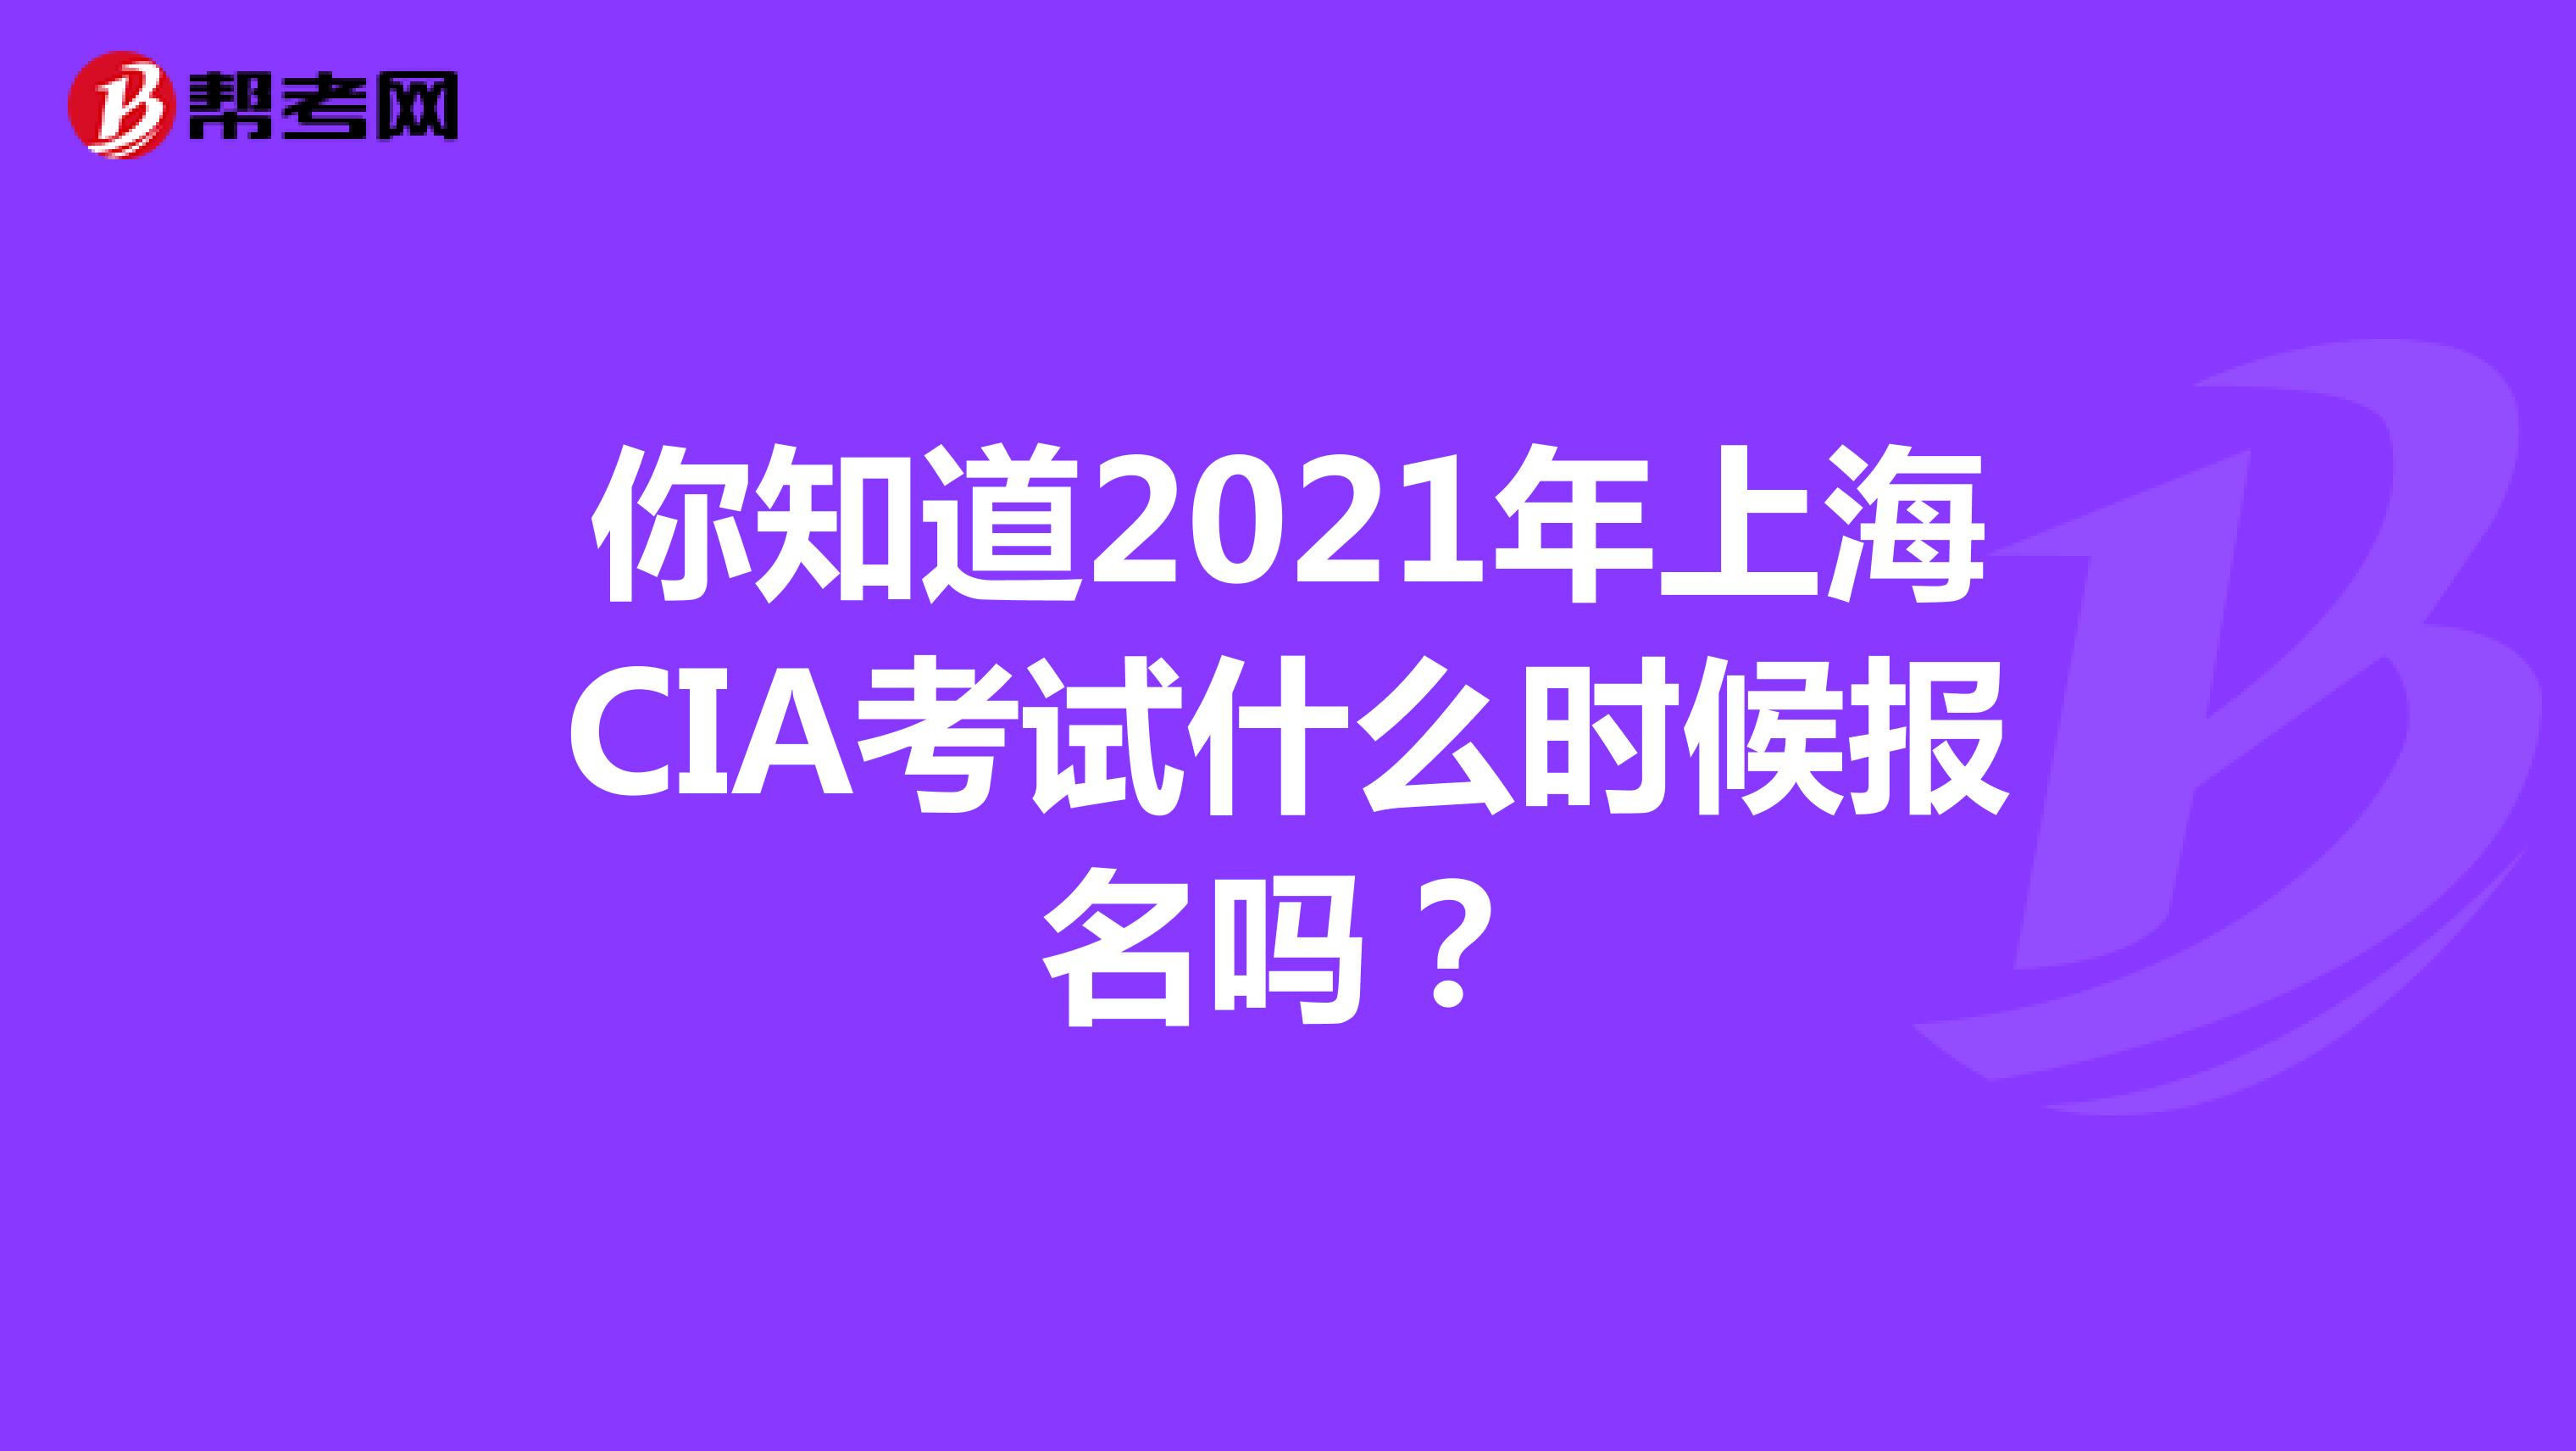 你知道2021年上海CIA考试什么时候报名吗？